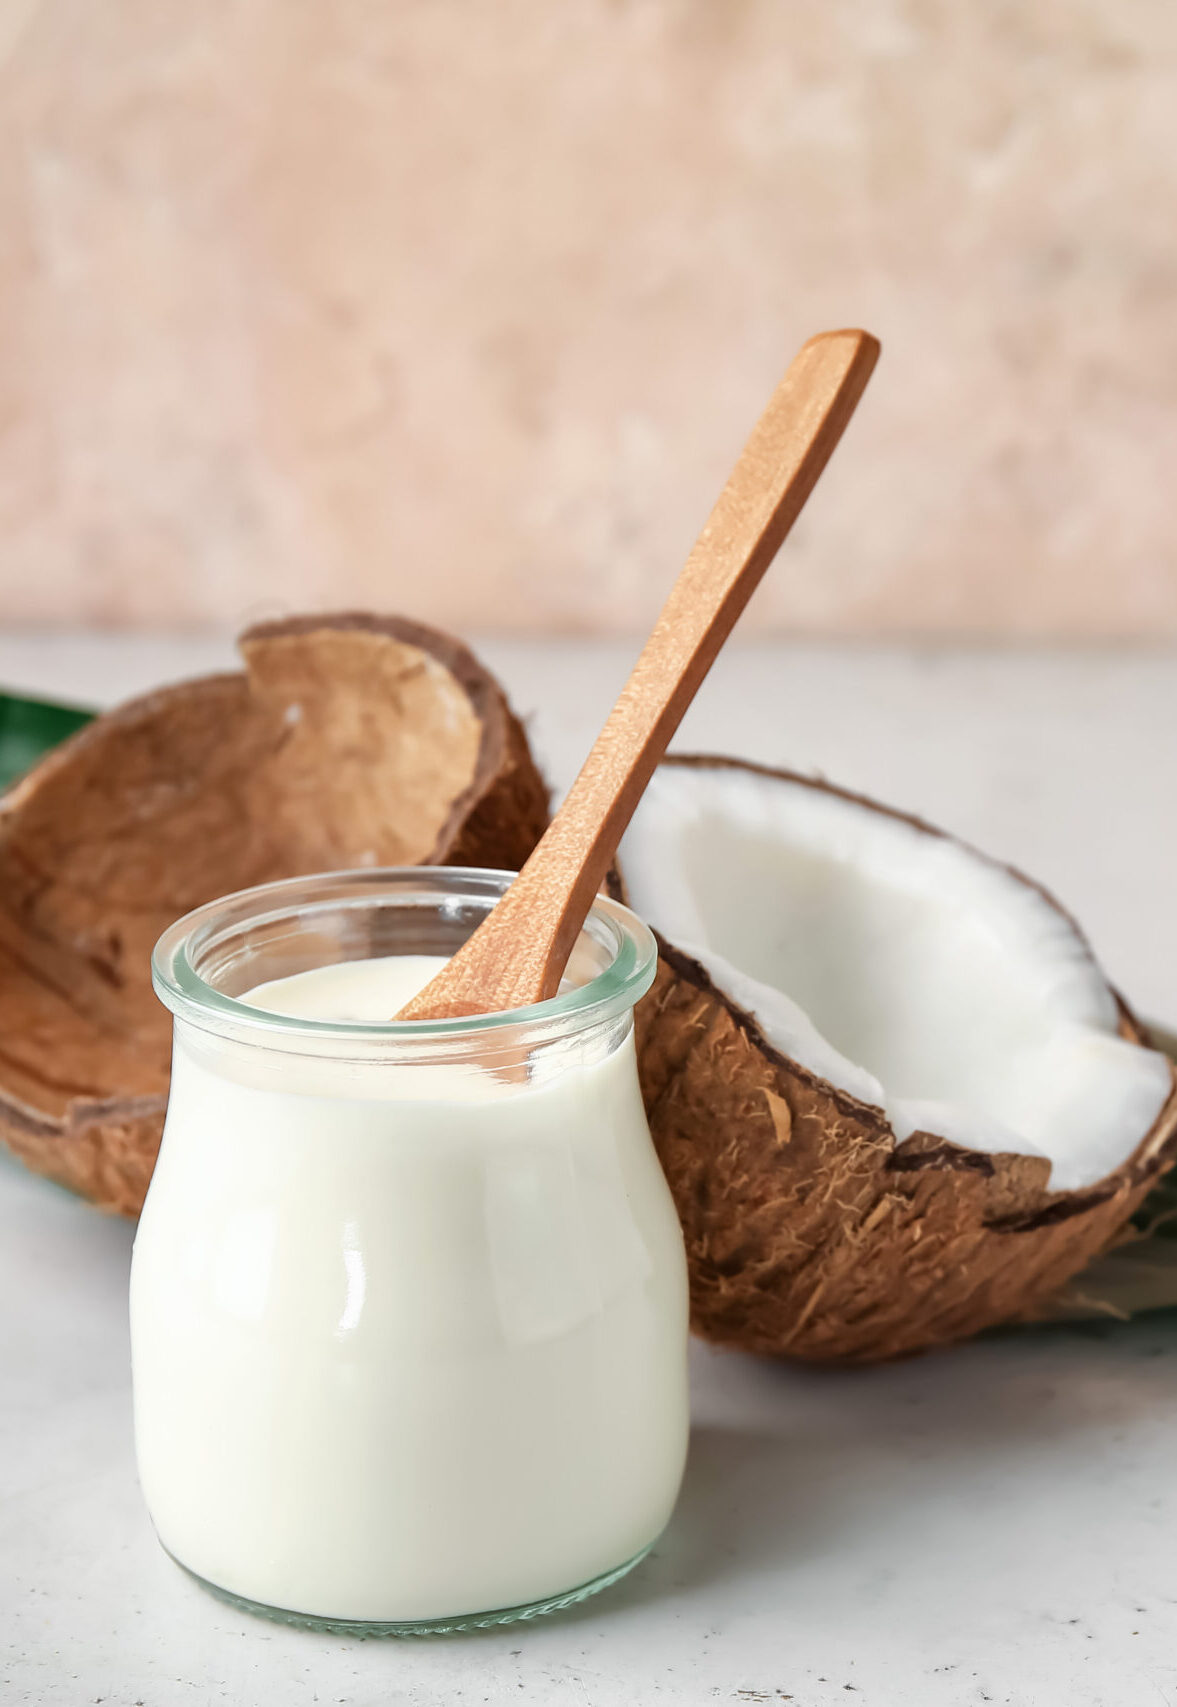 Best Coconut Yogurt Brands